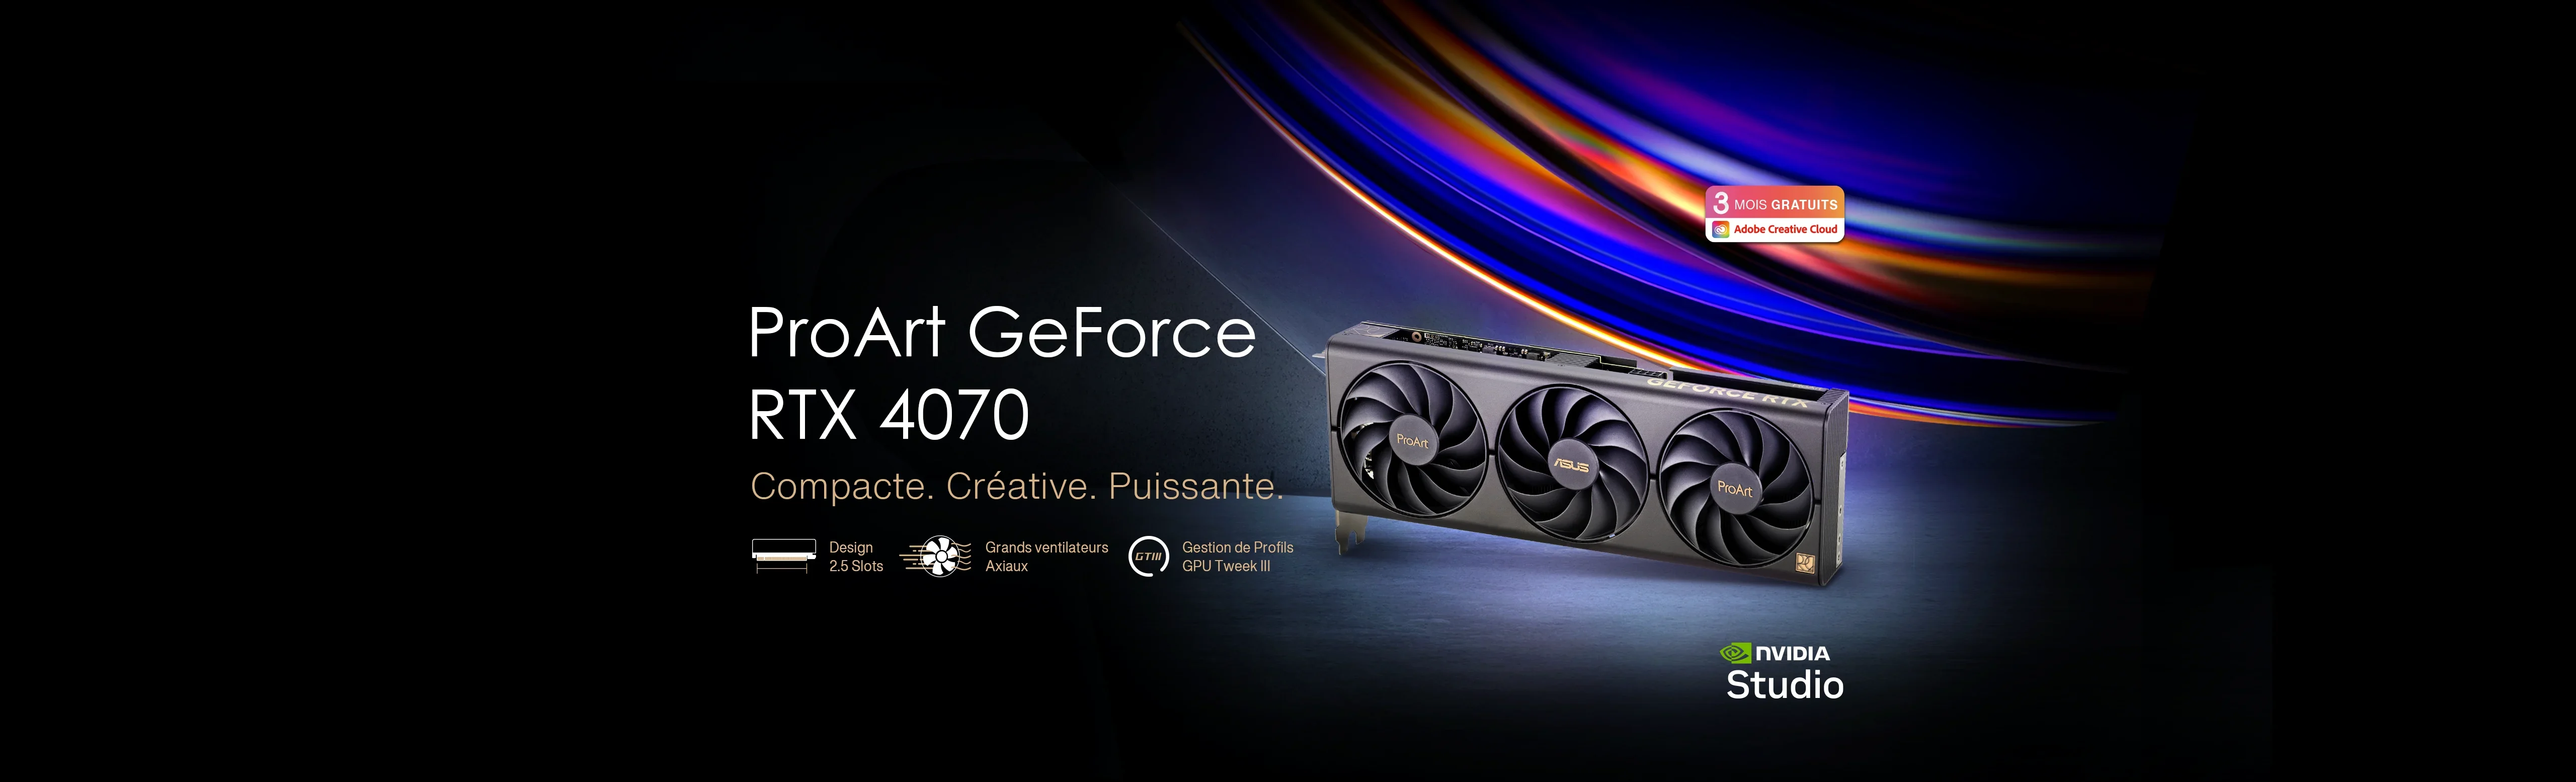 Carte graphique ASUS ProArt GeForce RTX 4070 debout sur un sol en béton brut avec les logos Adobe Creative Cloud et NVIDIA Studio